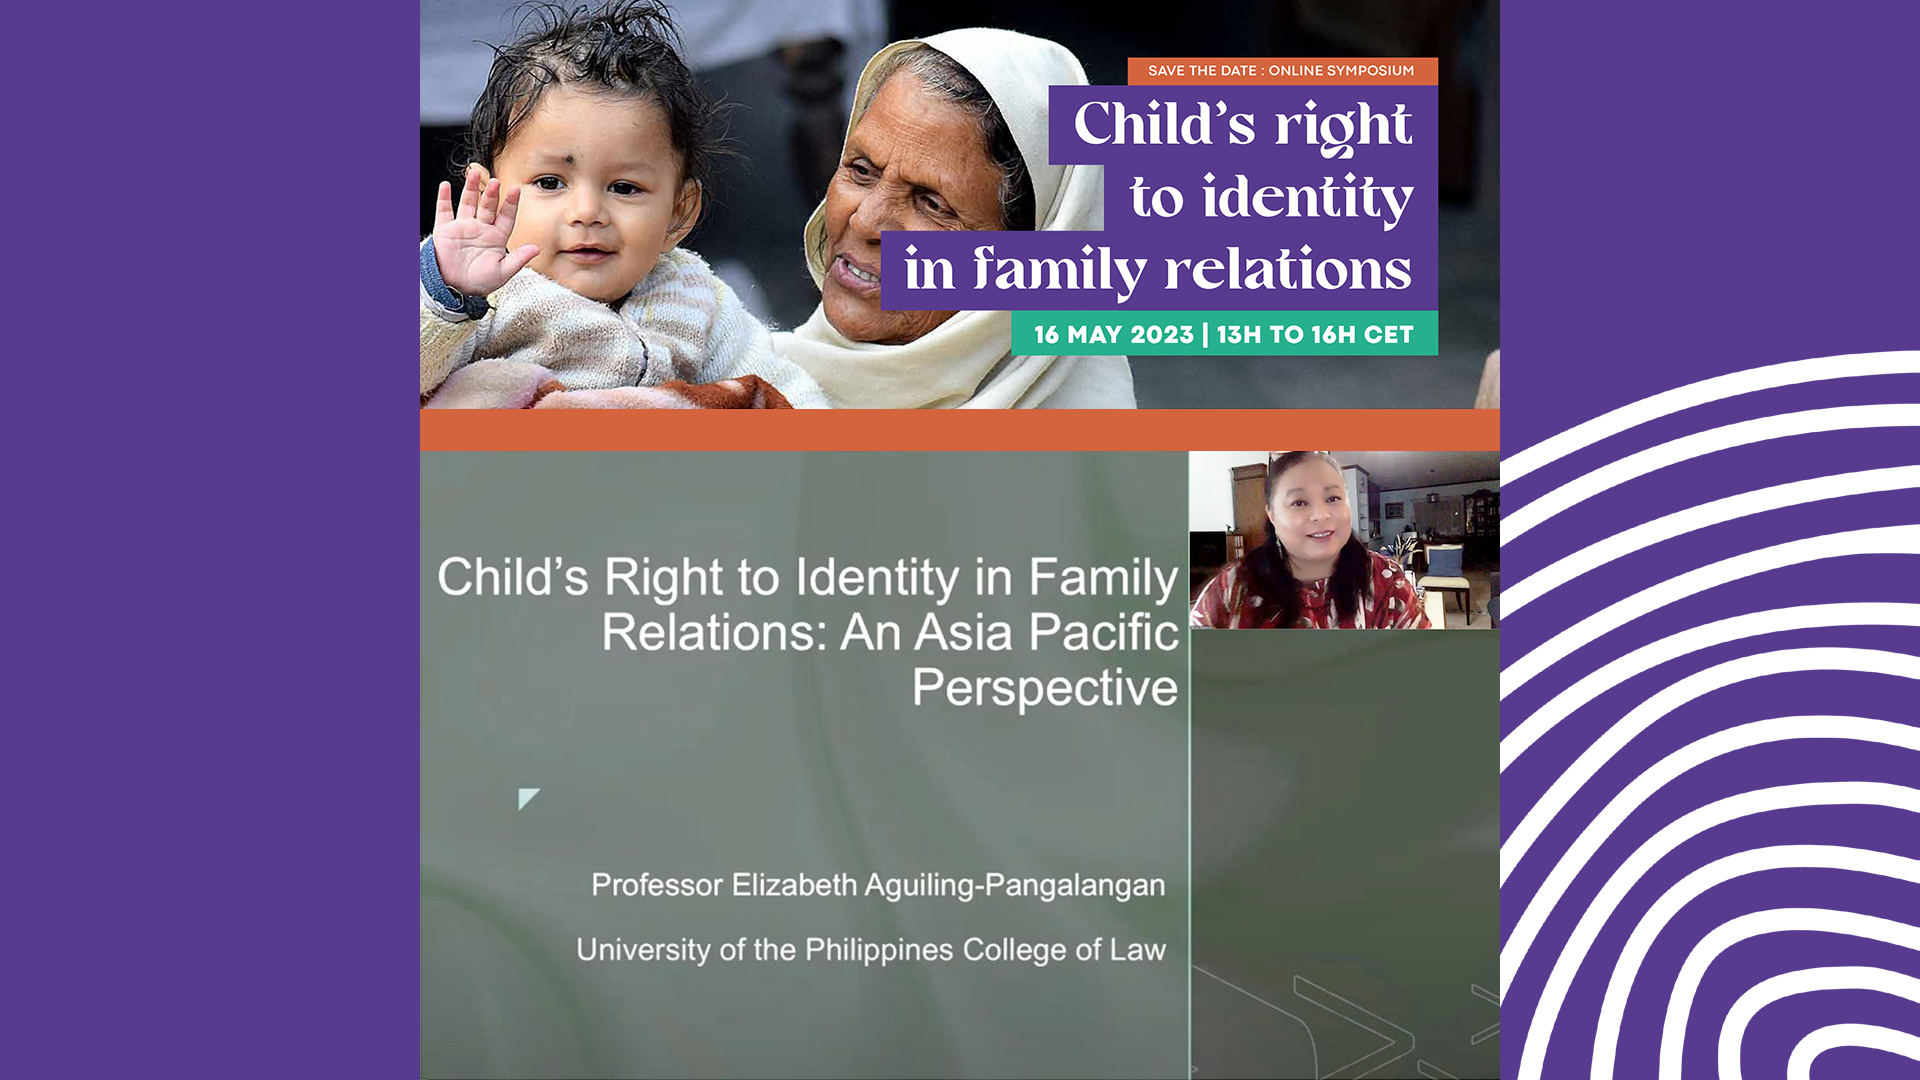 UP IHR Director speaks in international forum on Child’s Right to Identity